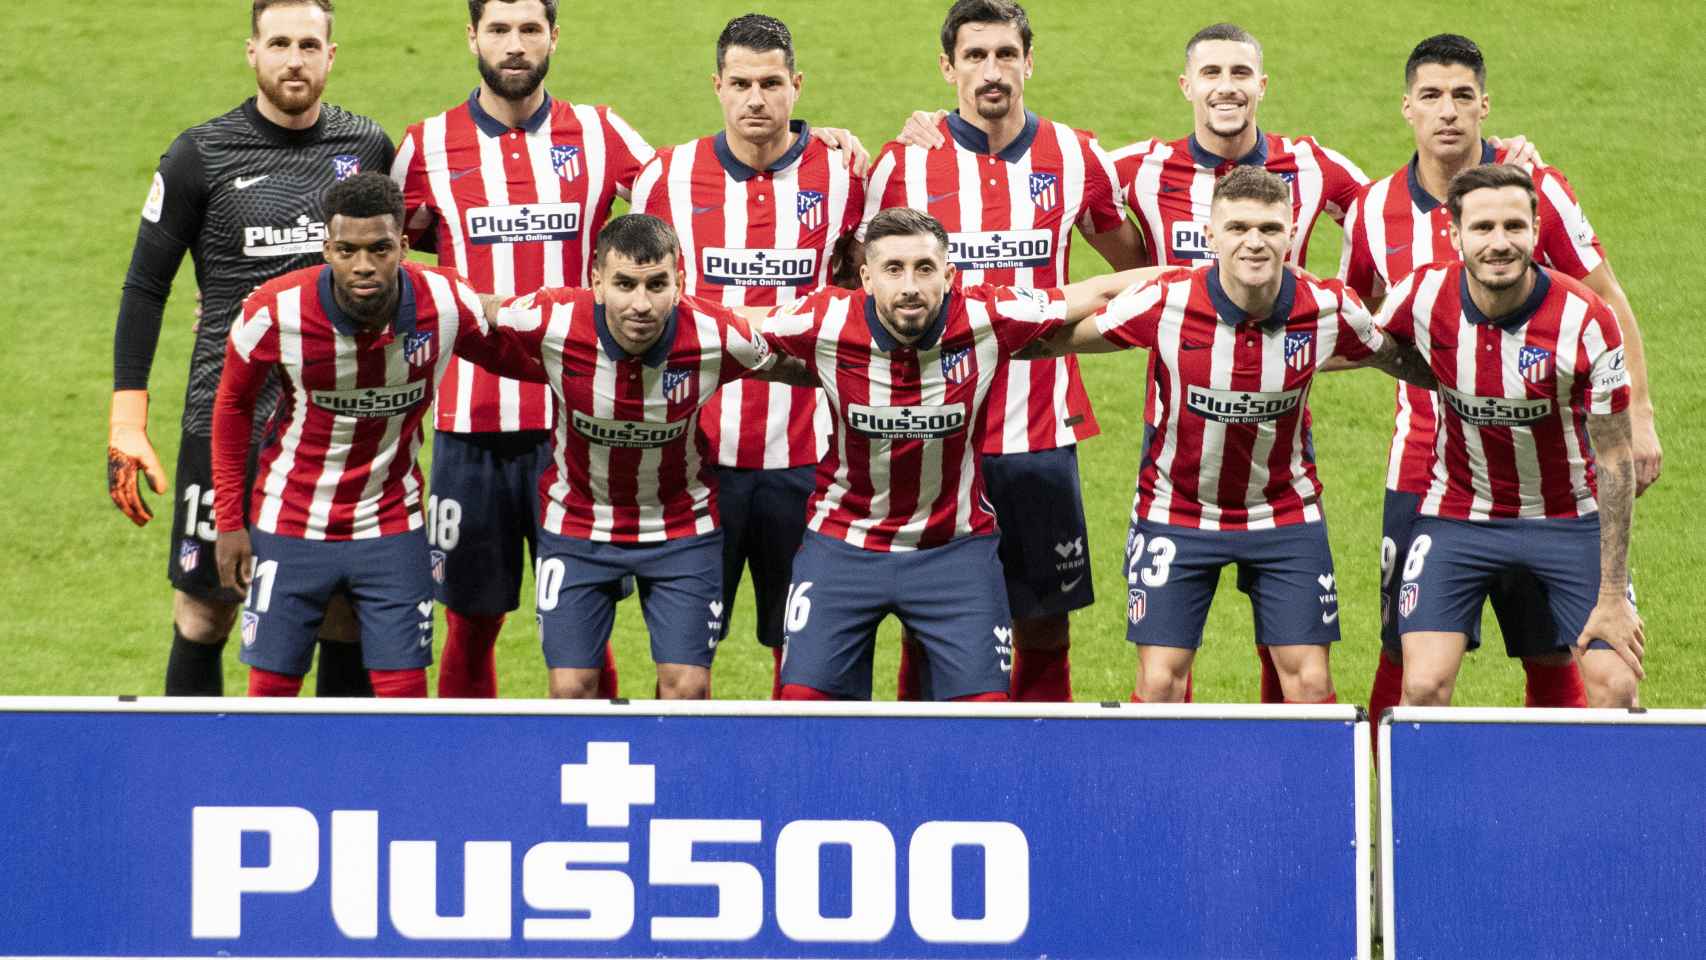 Los jugadores del Atlético de Madrid, posando antes del partido frente al Real Valladolid